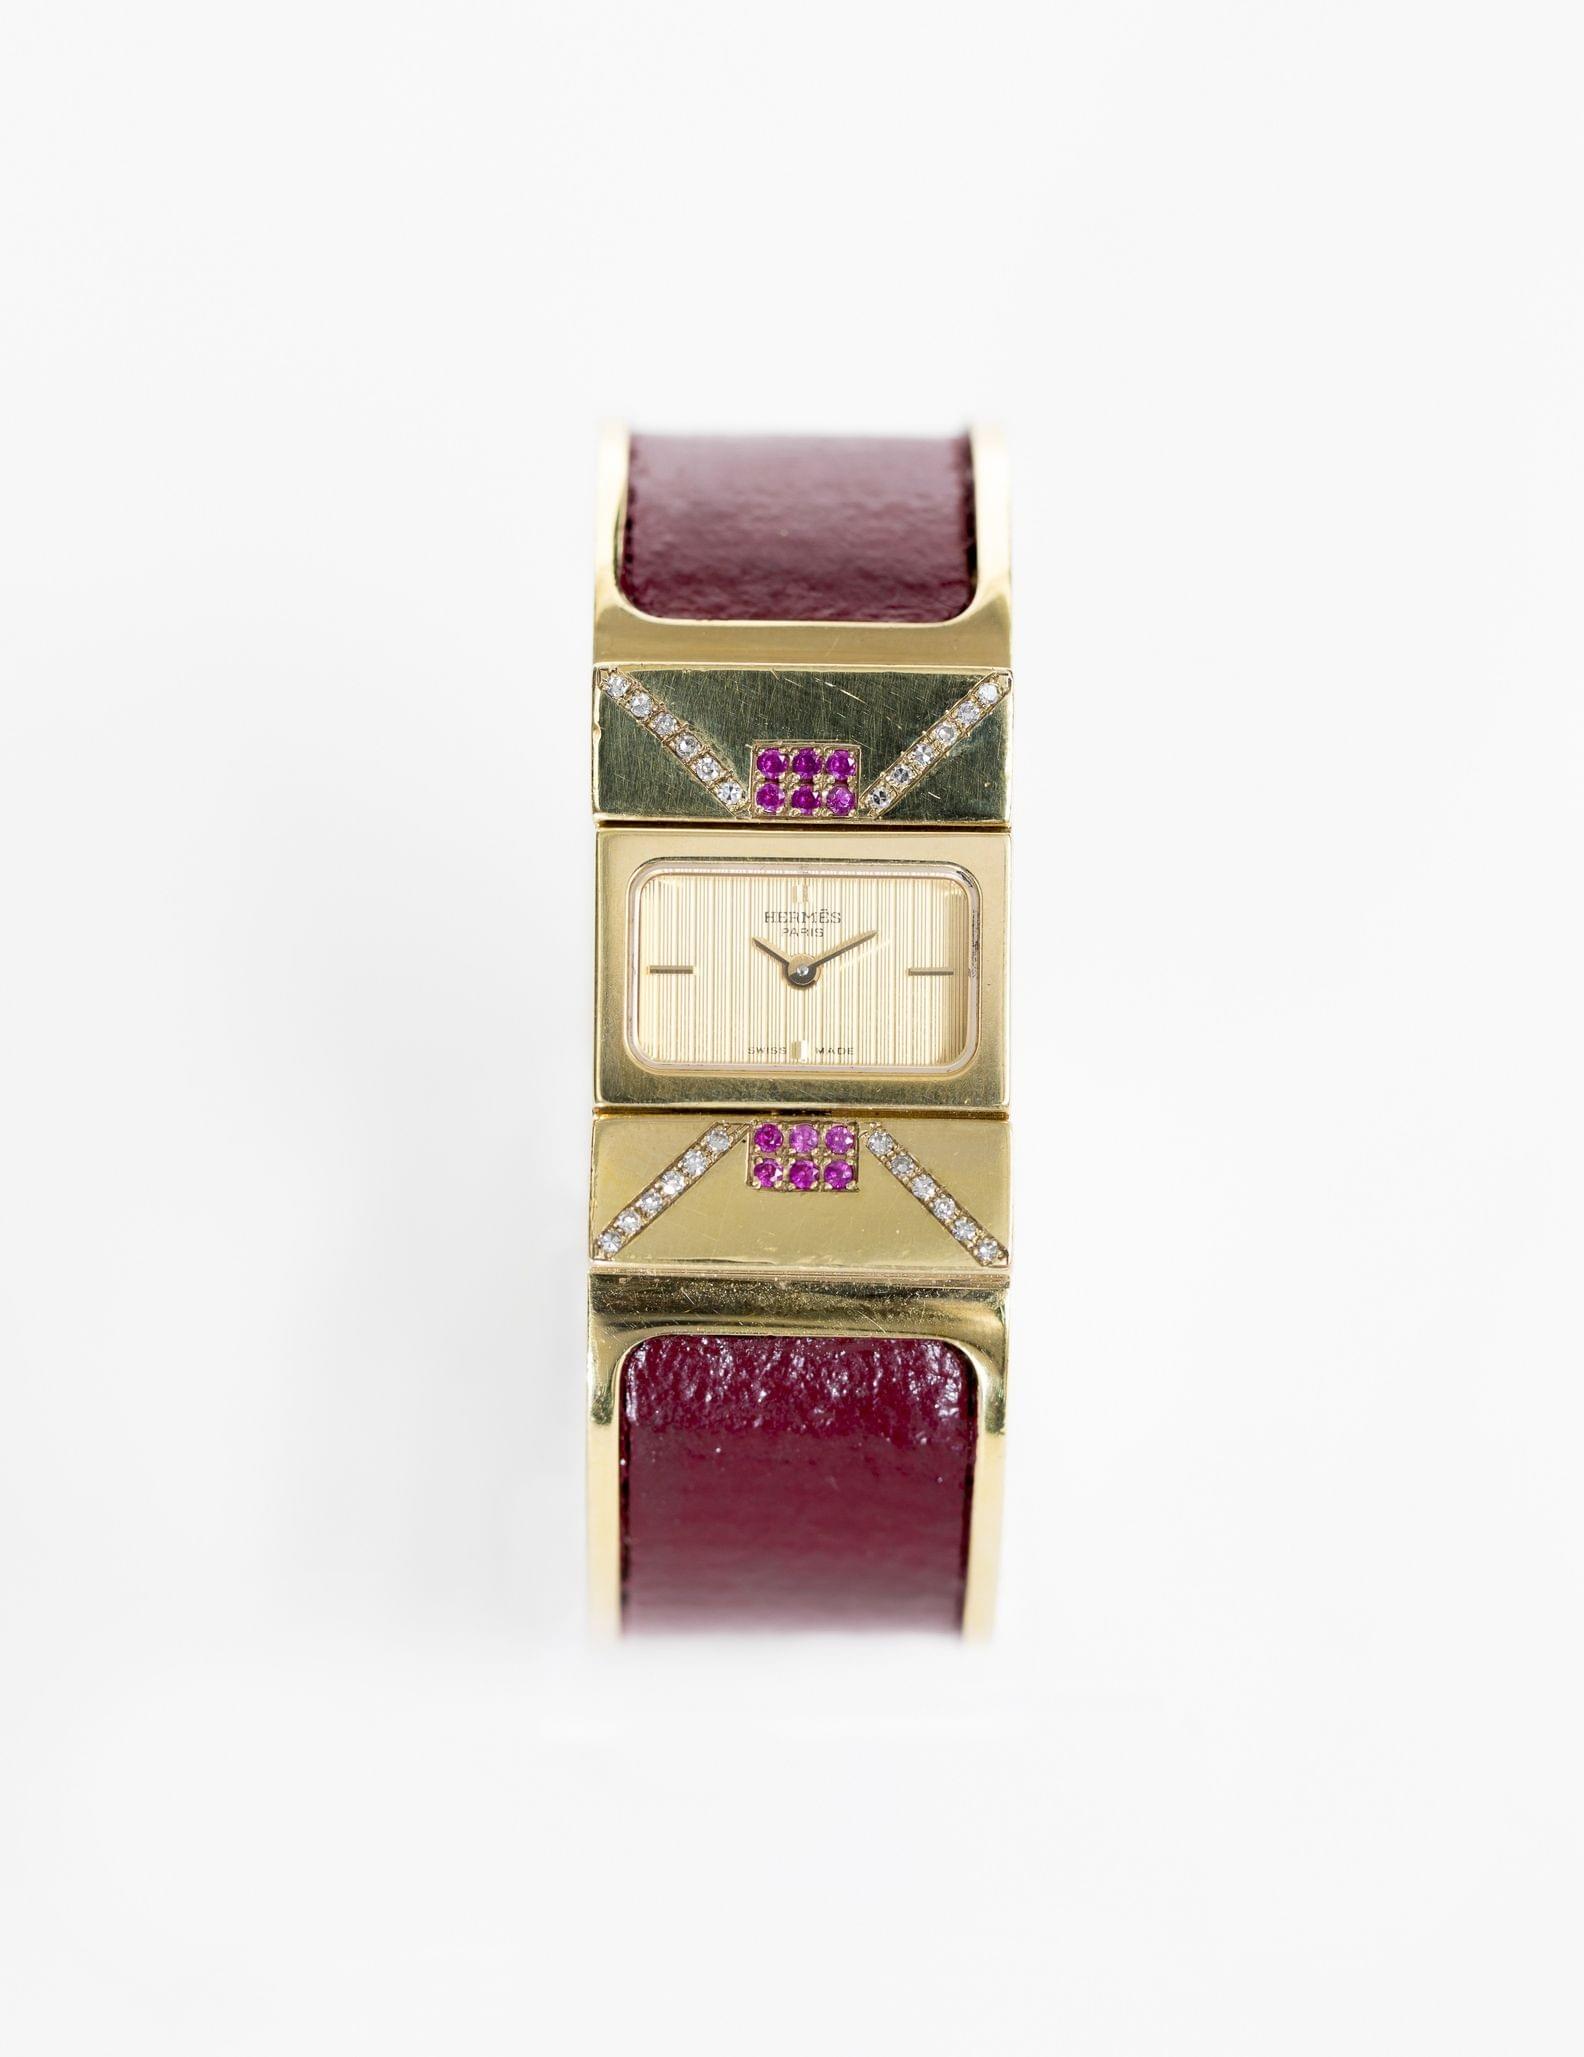 Hermès, loquet, montre-bracelet à quartz sertie de diamants et rubis d'imitation